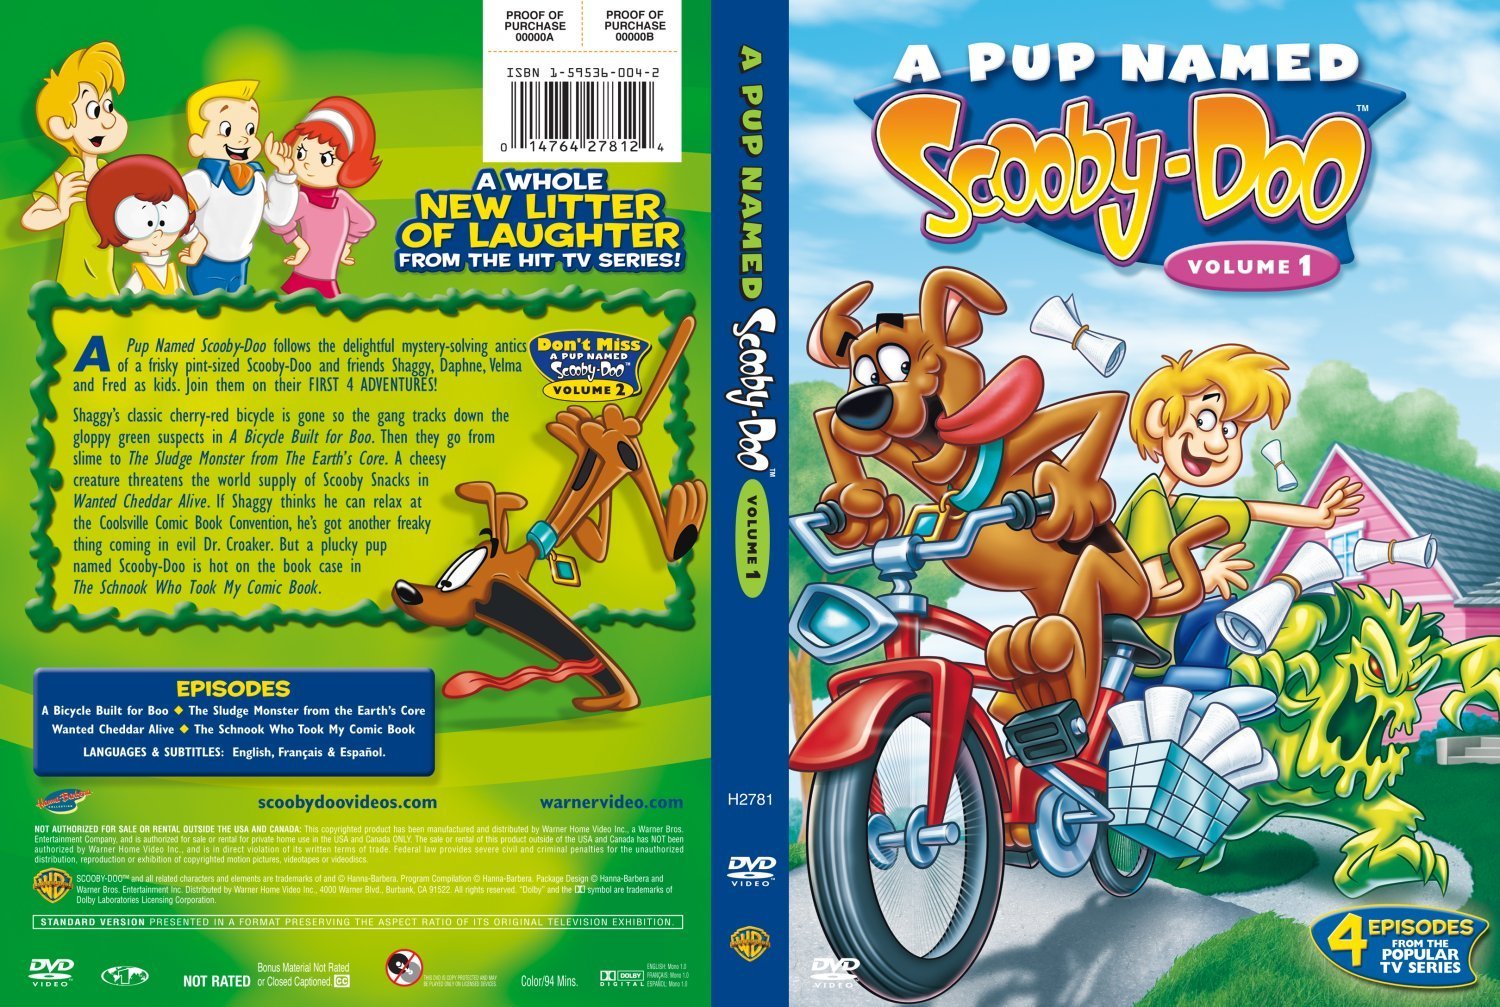 A Pup Named Scooby Doo Vol 1.